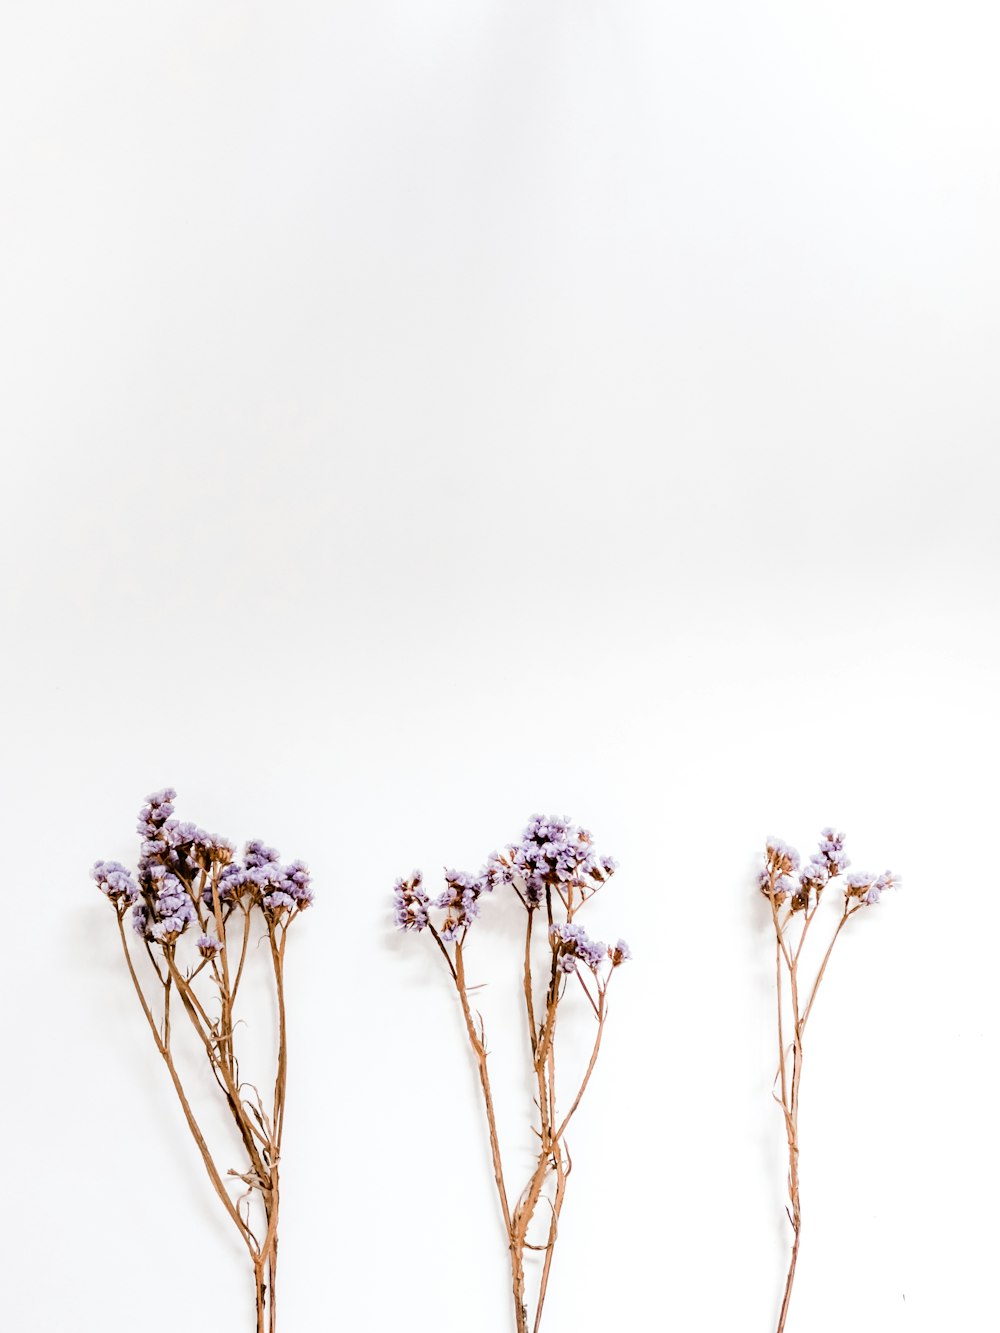 drei violettblättrige Blüten auf weißer Oberfläche